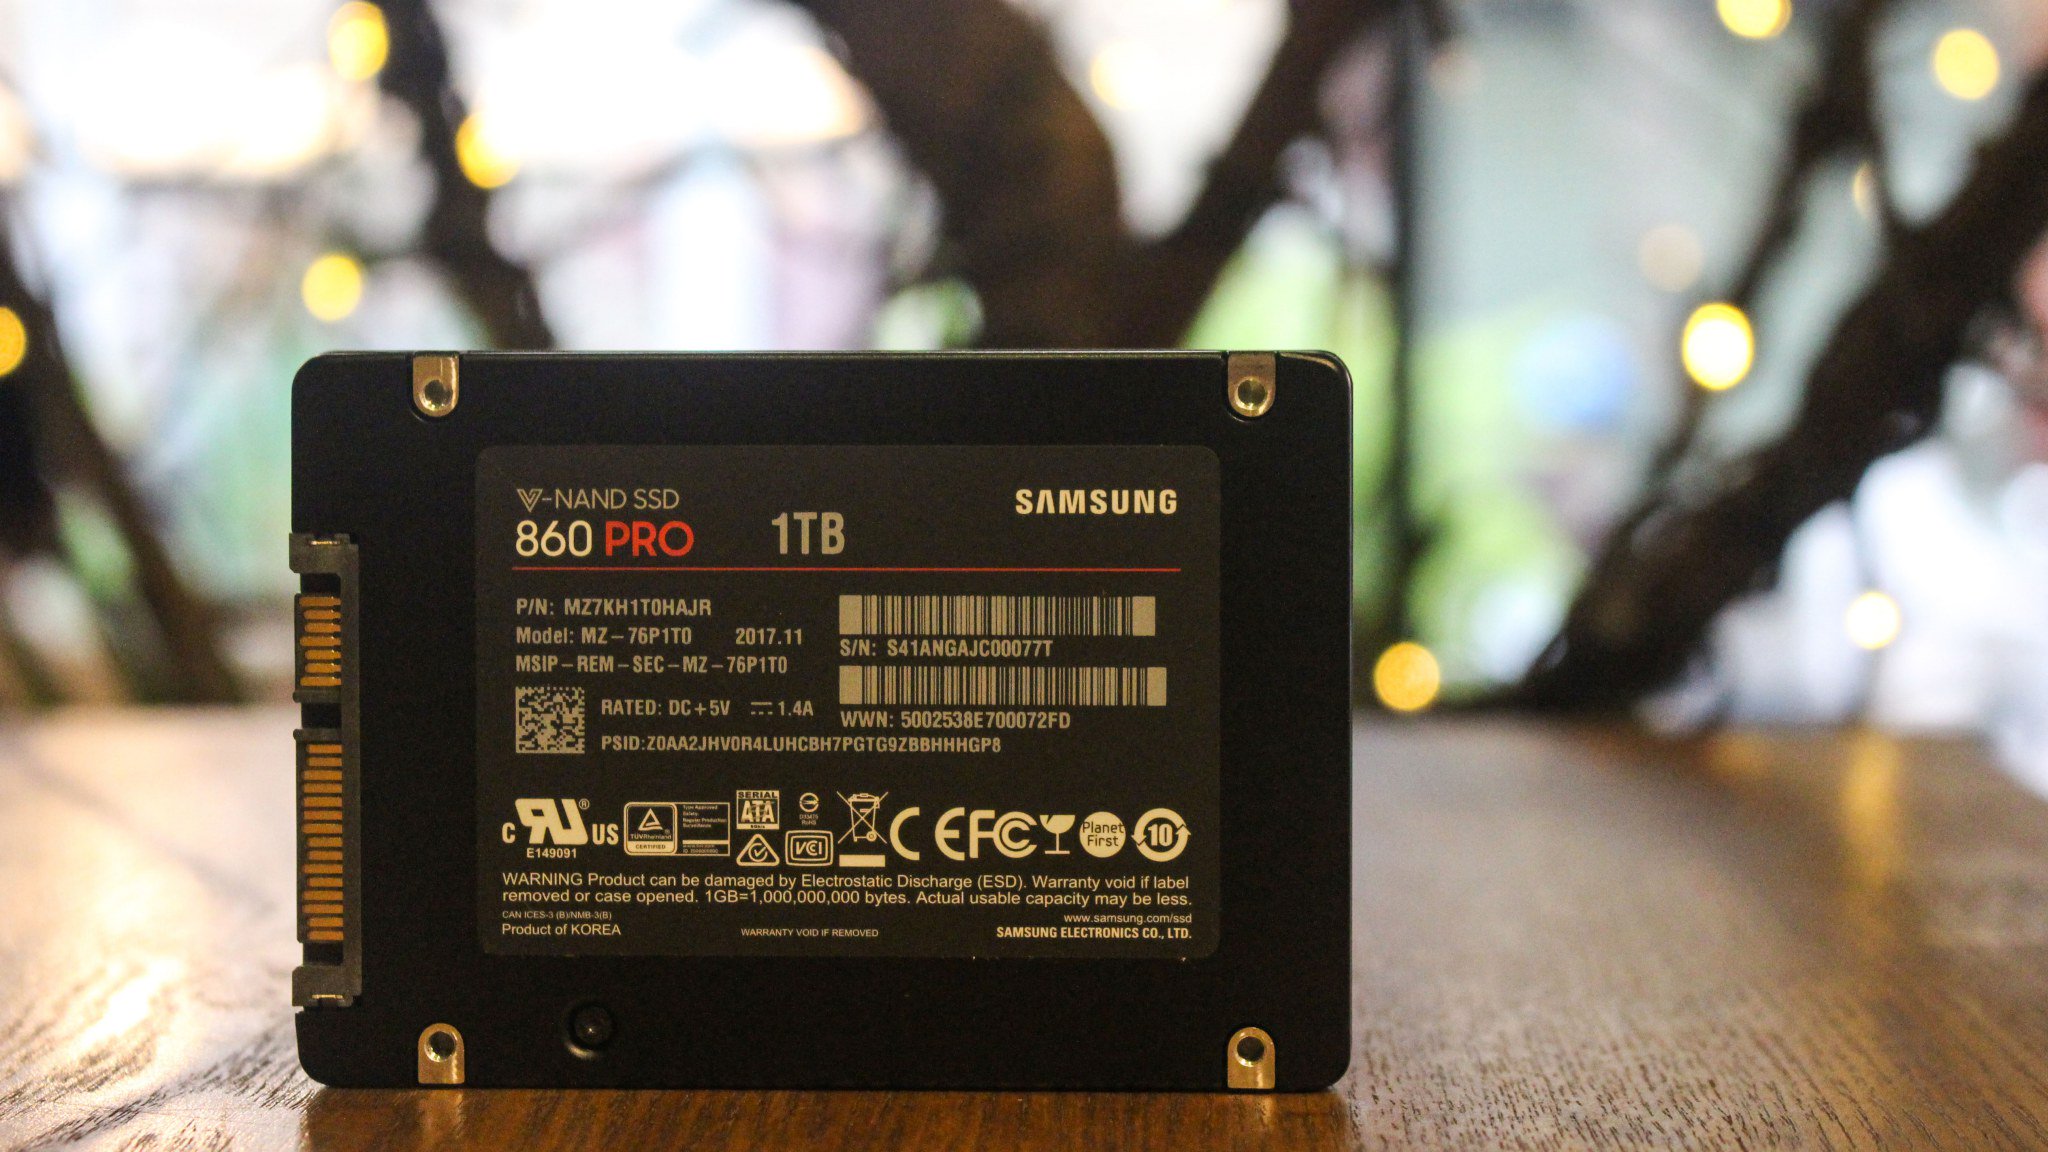 Ổ cứng Samsung SSD 860 PRO và 860 EVO sử dụng chip V-NAND